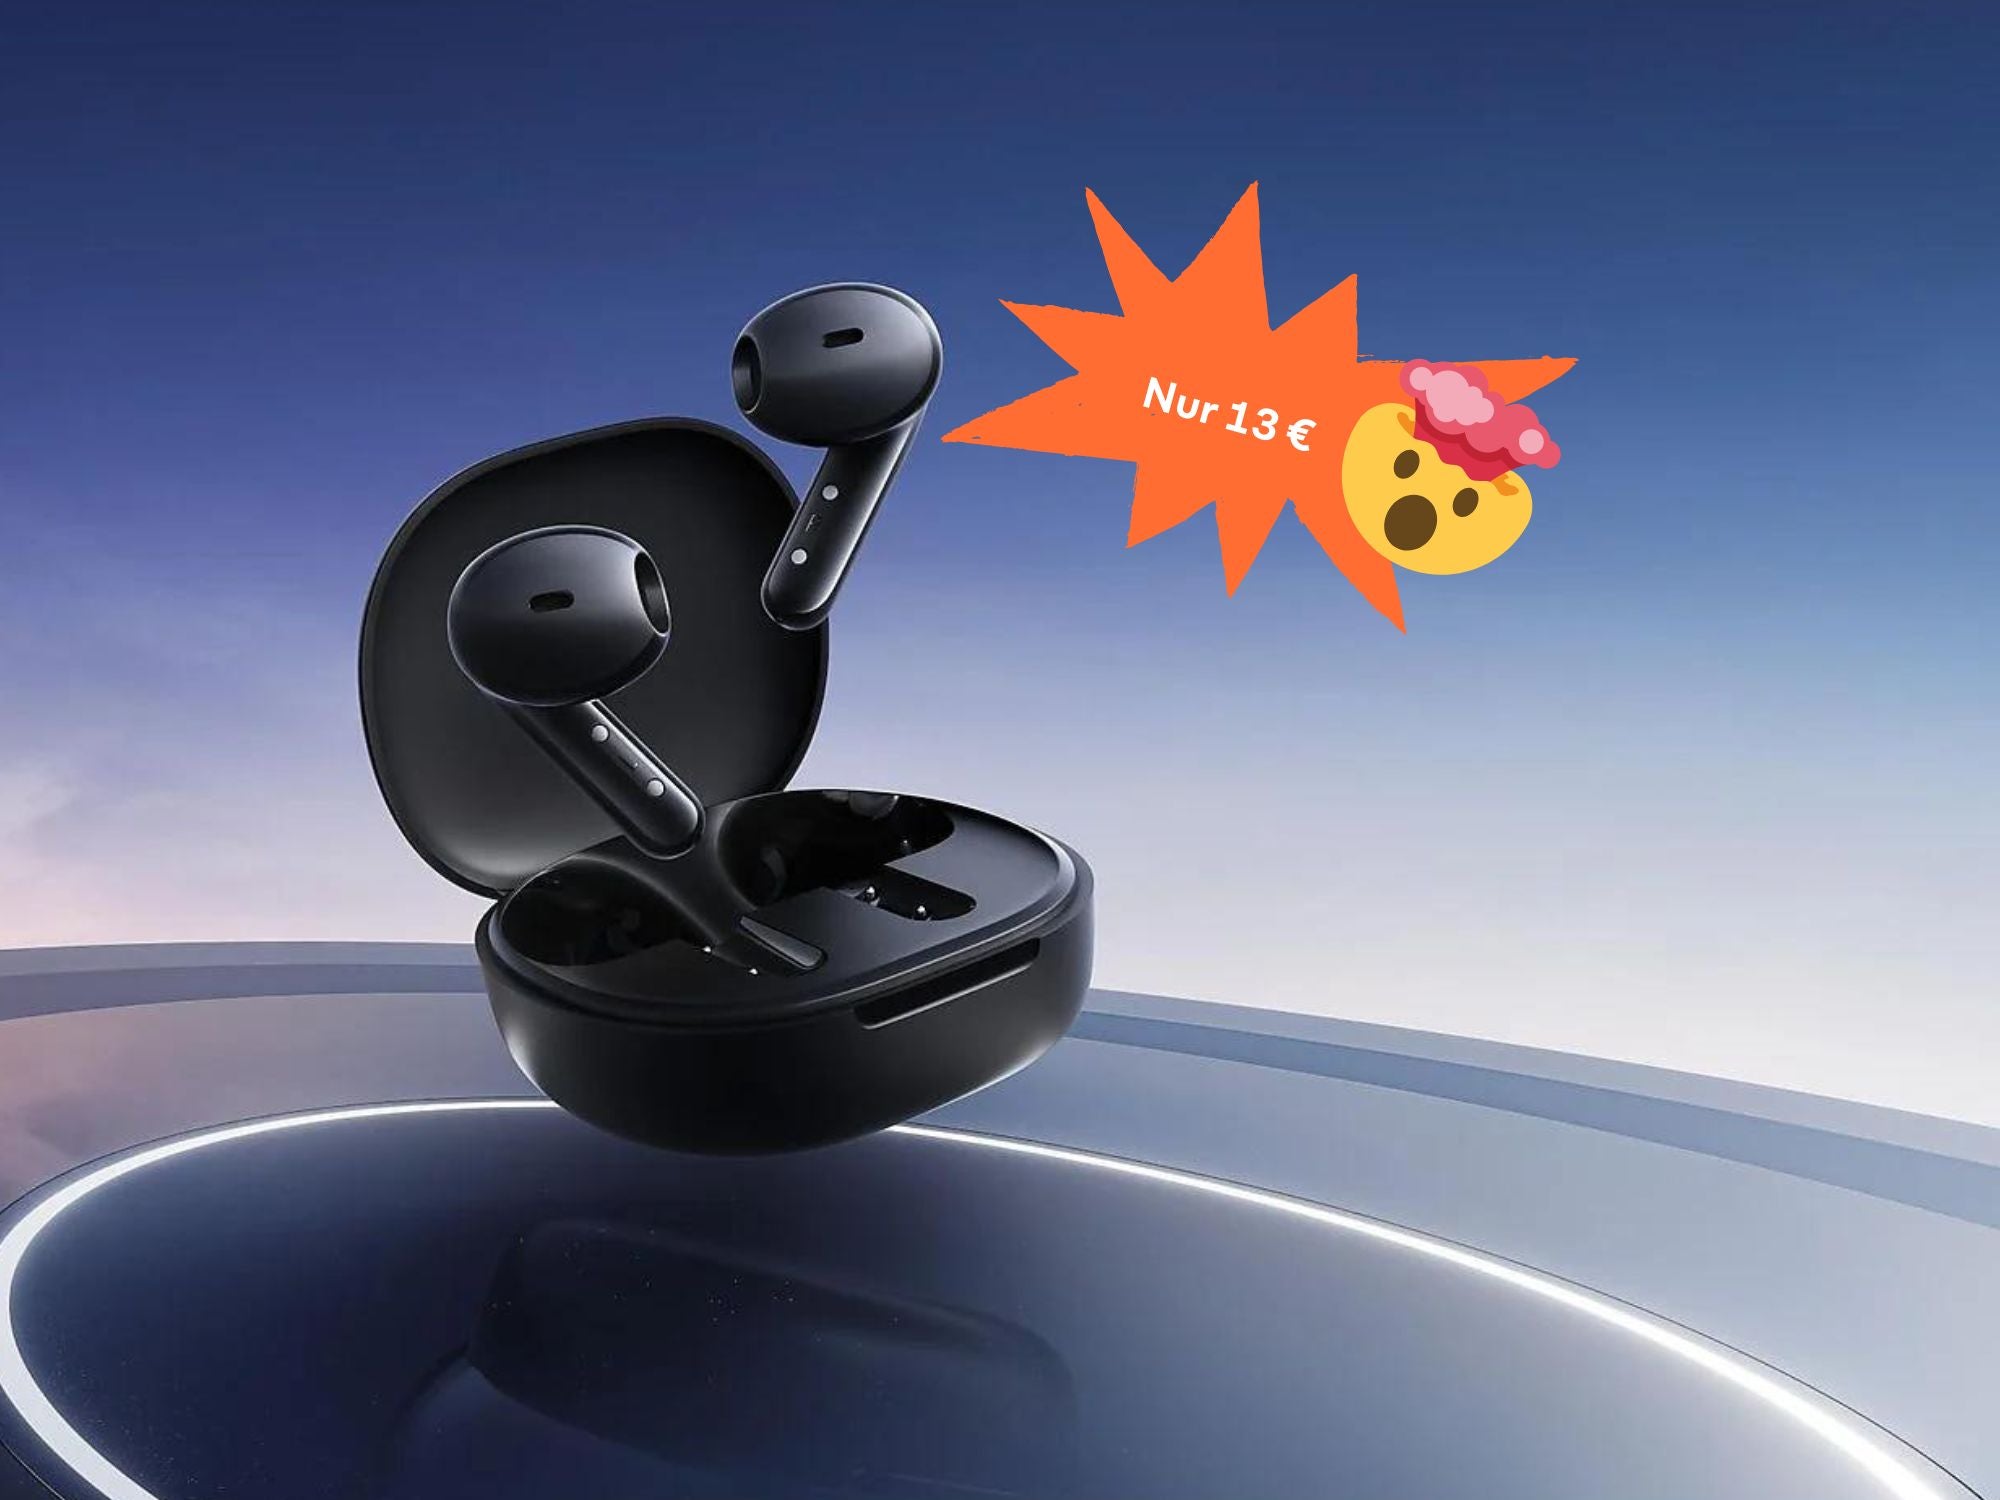 Absurd günstig - Saturn verkauft gerade diese Bluetooth In-Ears für 13 Euro